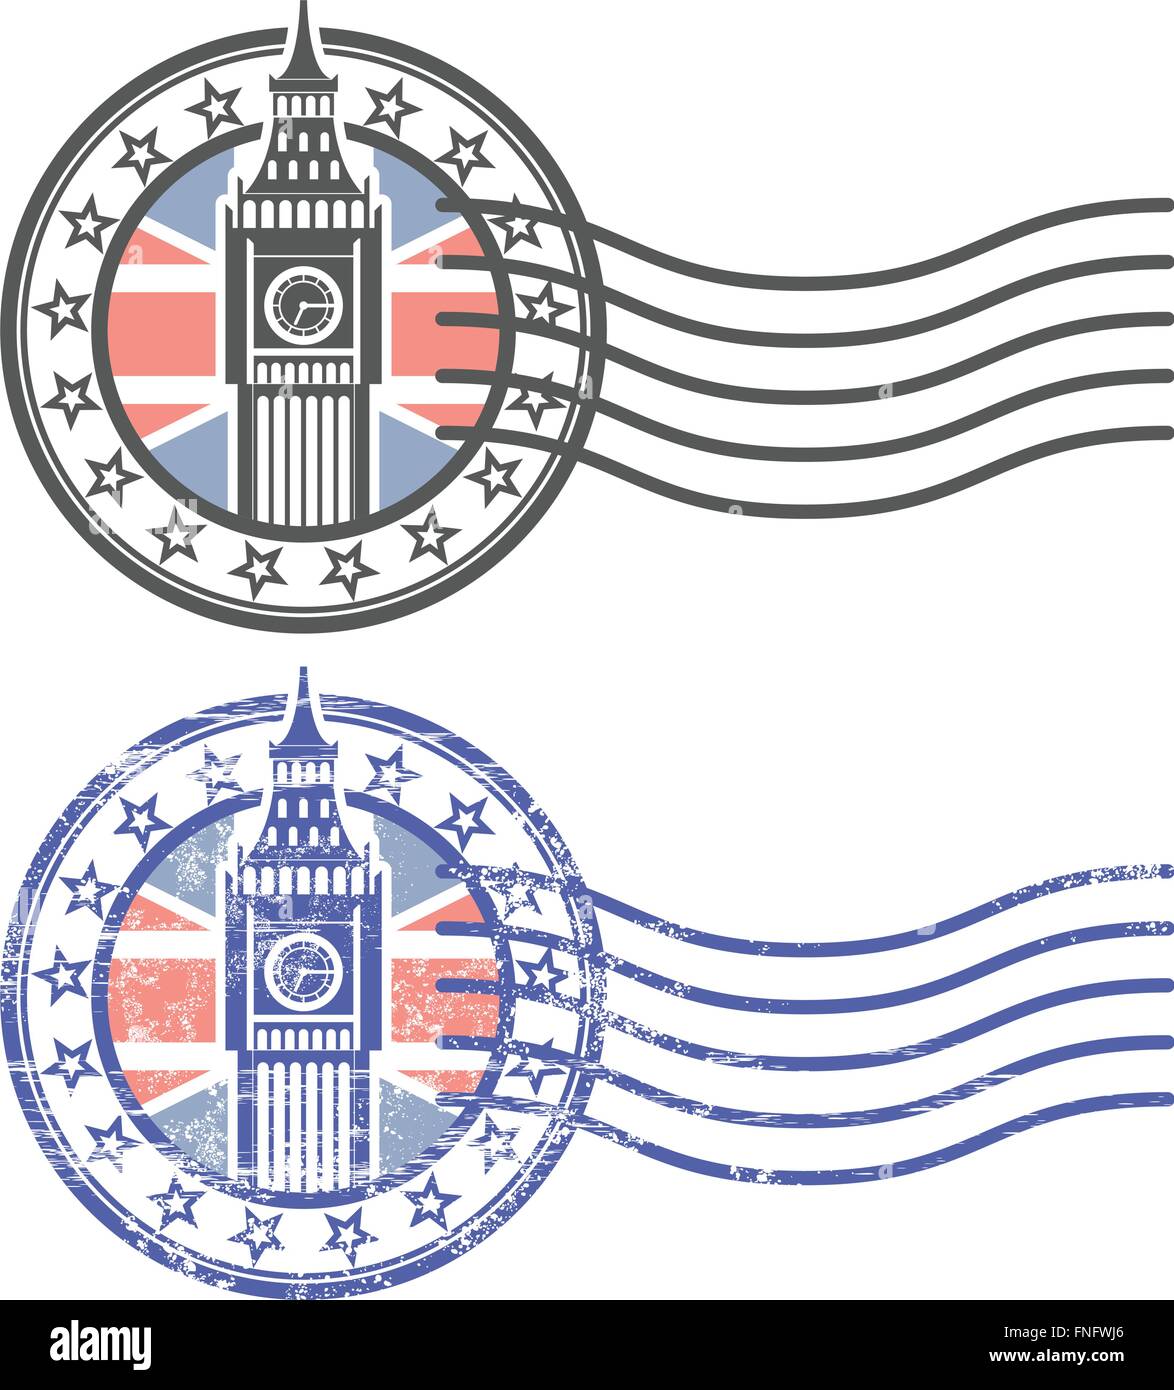 Grunge Stempel mit Big Ben und die britische Flagge - Wahrzeichen von London Stock Vektor